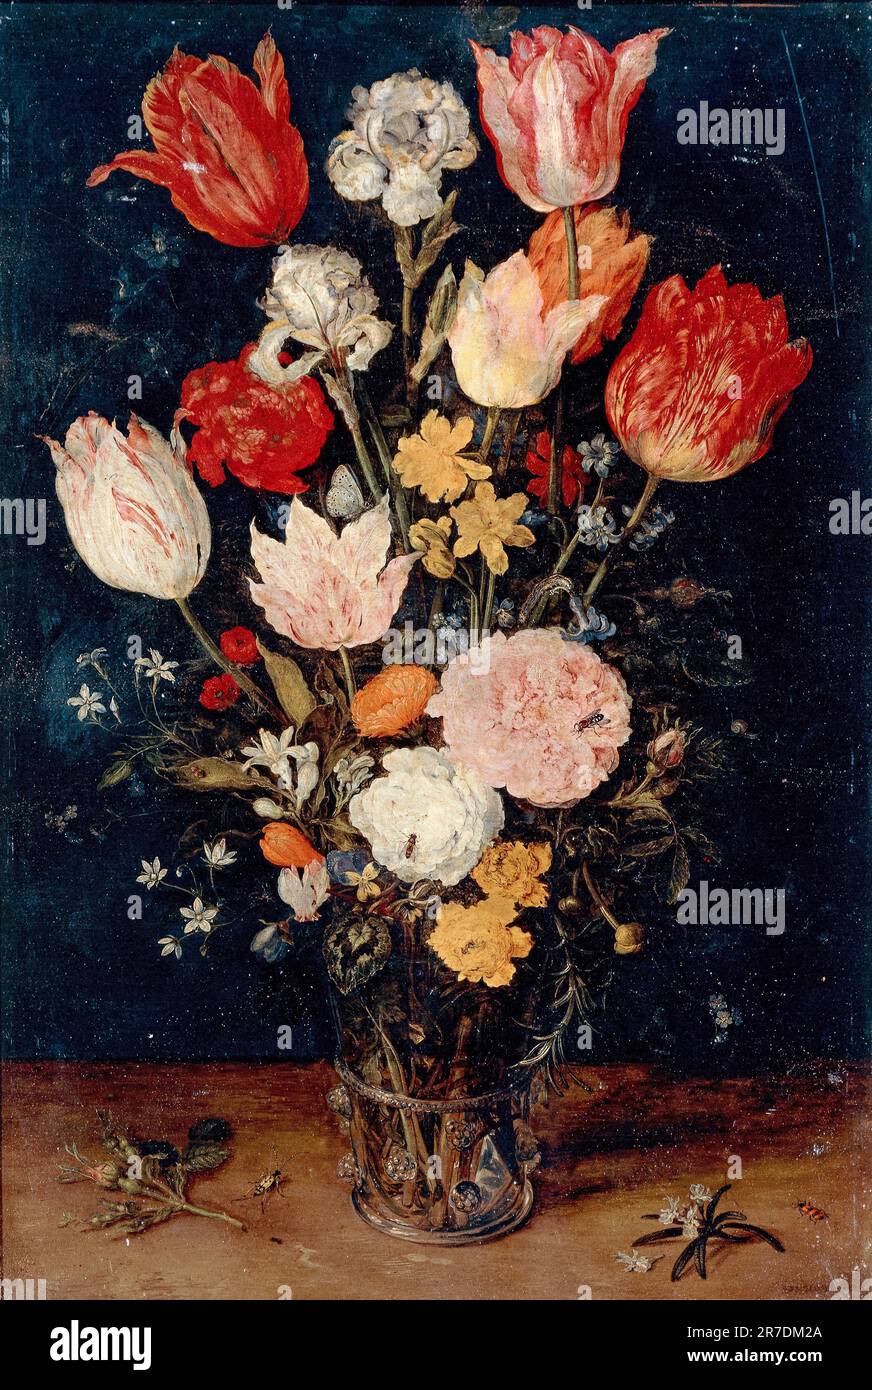 Jan Brueghel The Elder, fleurs dans un vase, peinture encore à l'huile sur cuivre, 1608 Banque D'Images